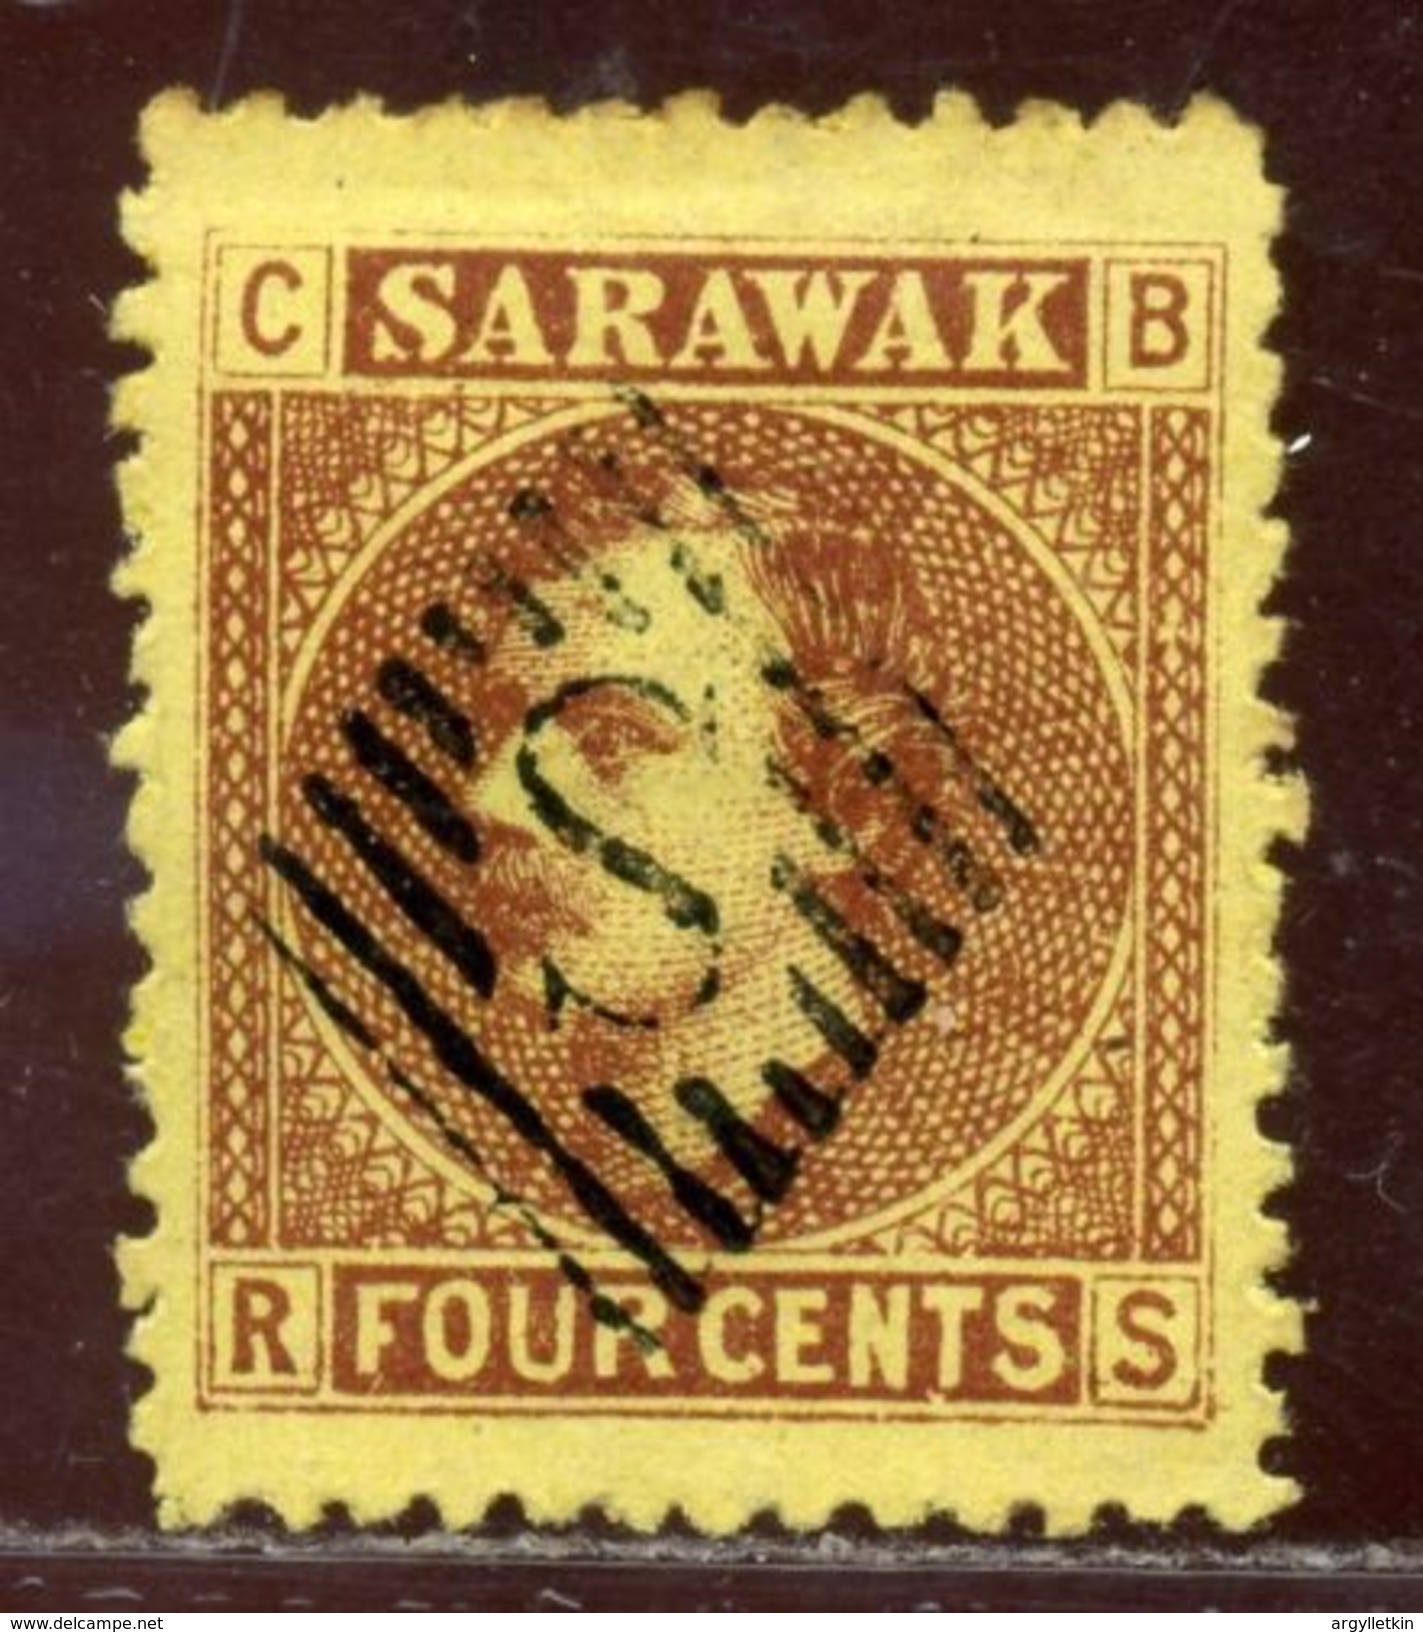 SARAWAK 'S' CANCEL KU CHING 4c - Sarawak (...-1963)